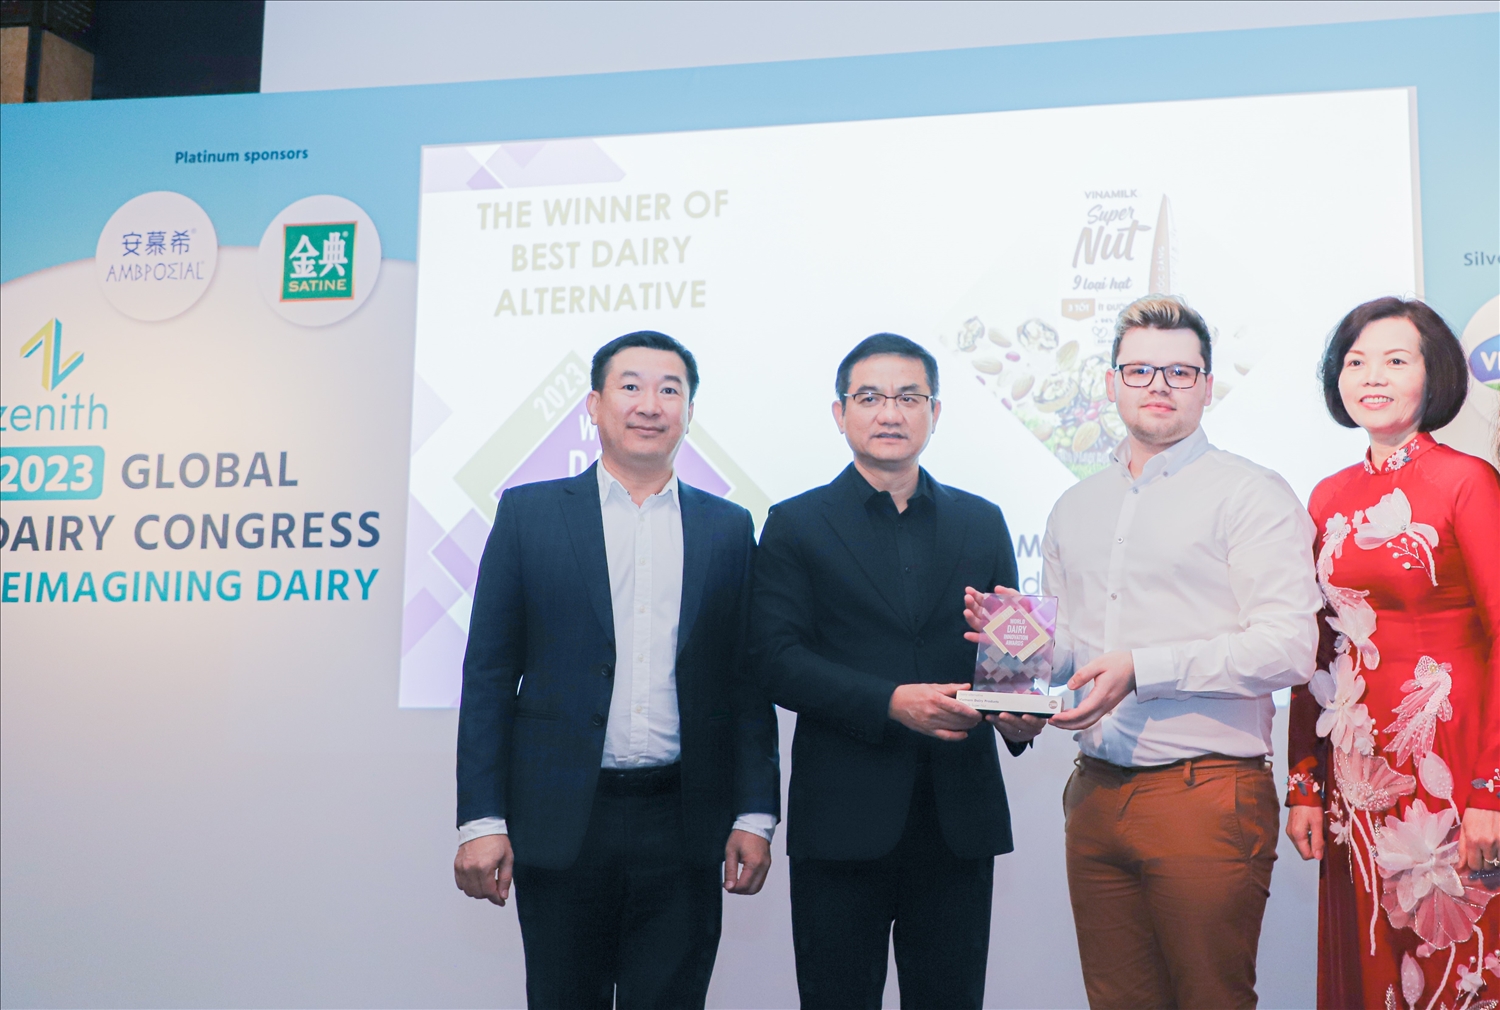 Đại diện Vinamilk nhận giải “Quán quân” ở hạng mục “Sản phẩm thay thế sữa tốt nhất” (Best Dairy Alternative) cho sản phẩm Sữa 9 Loại Hạt Vinamilk Super Nut tại Hội Nghị Sữa Toàn Cầu 2023 (World Dairy Innovation Awards 2023) diễn ra tại Anh Quốc tháng 6 vừa qua. (Ảnh: Vinamilk).